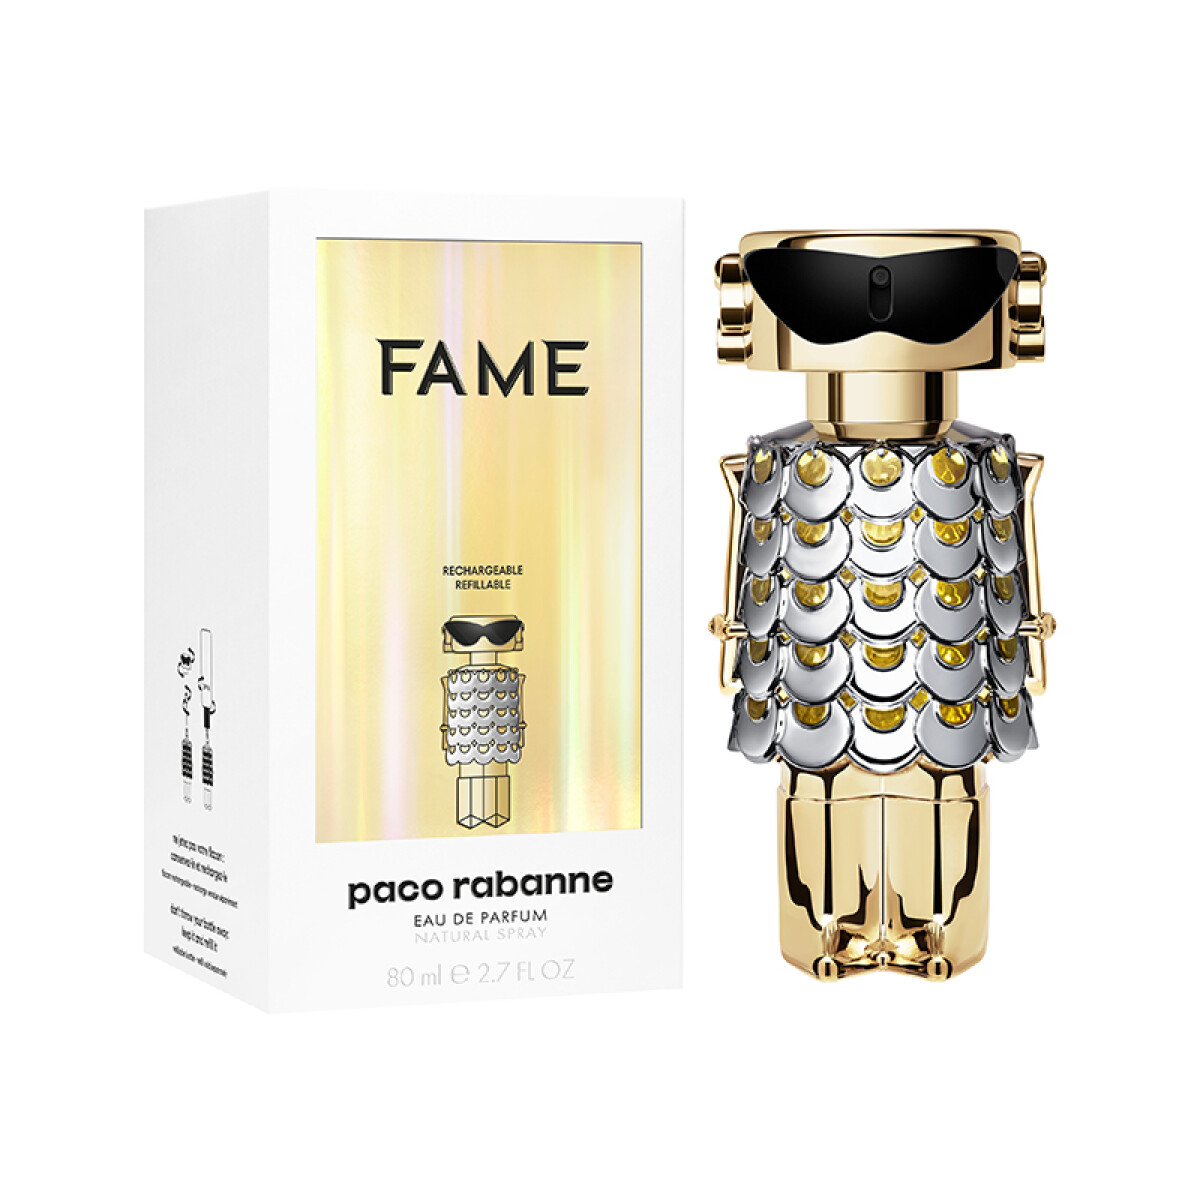 Fame Eau de parfum Paco Rabanne - 80 ml 